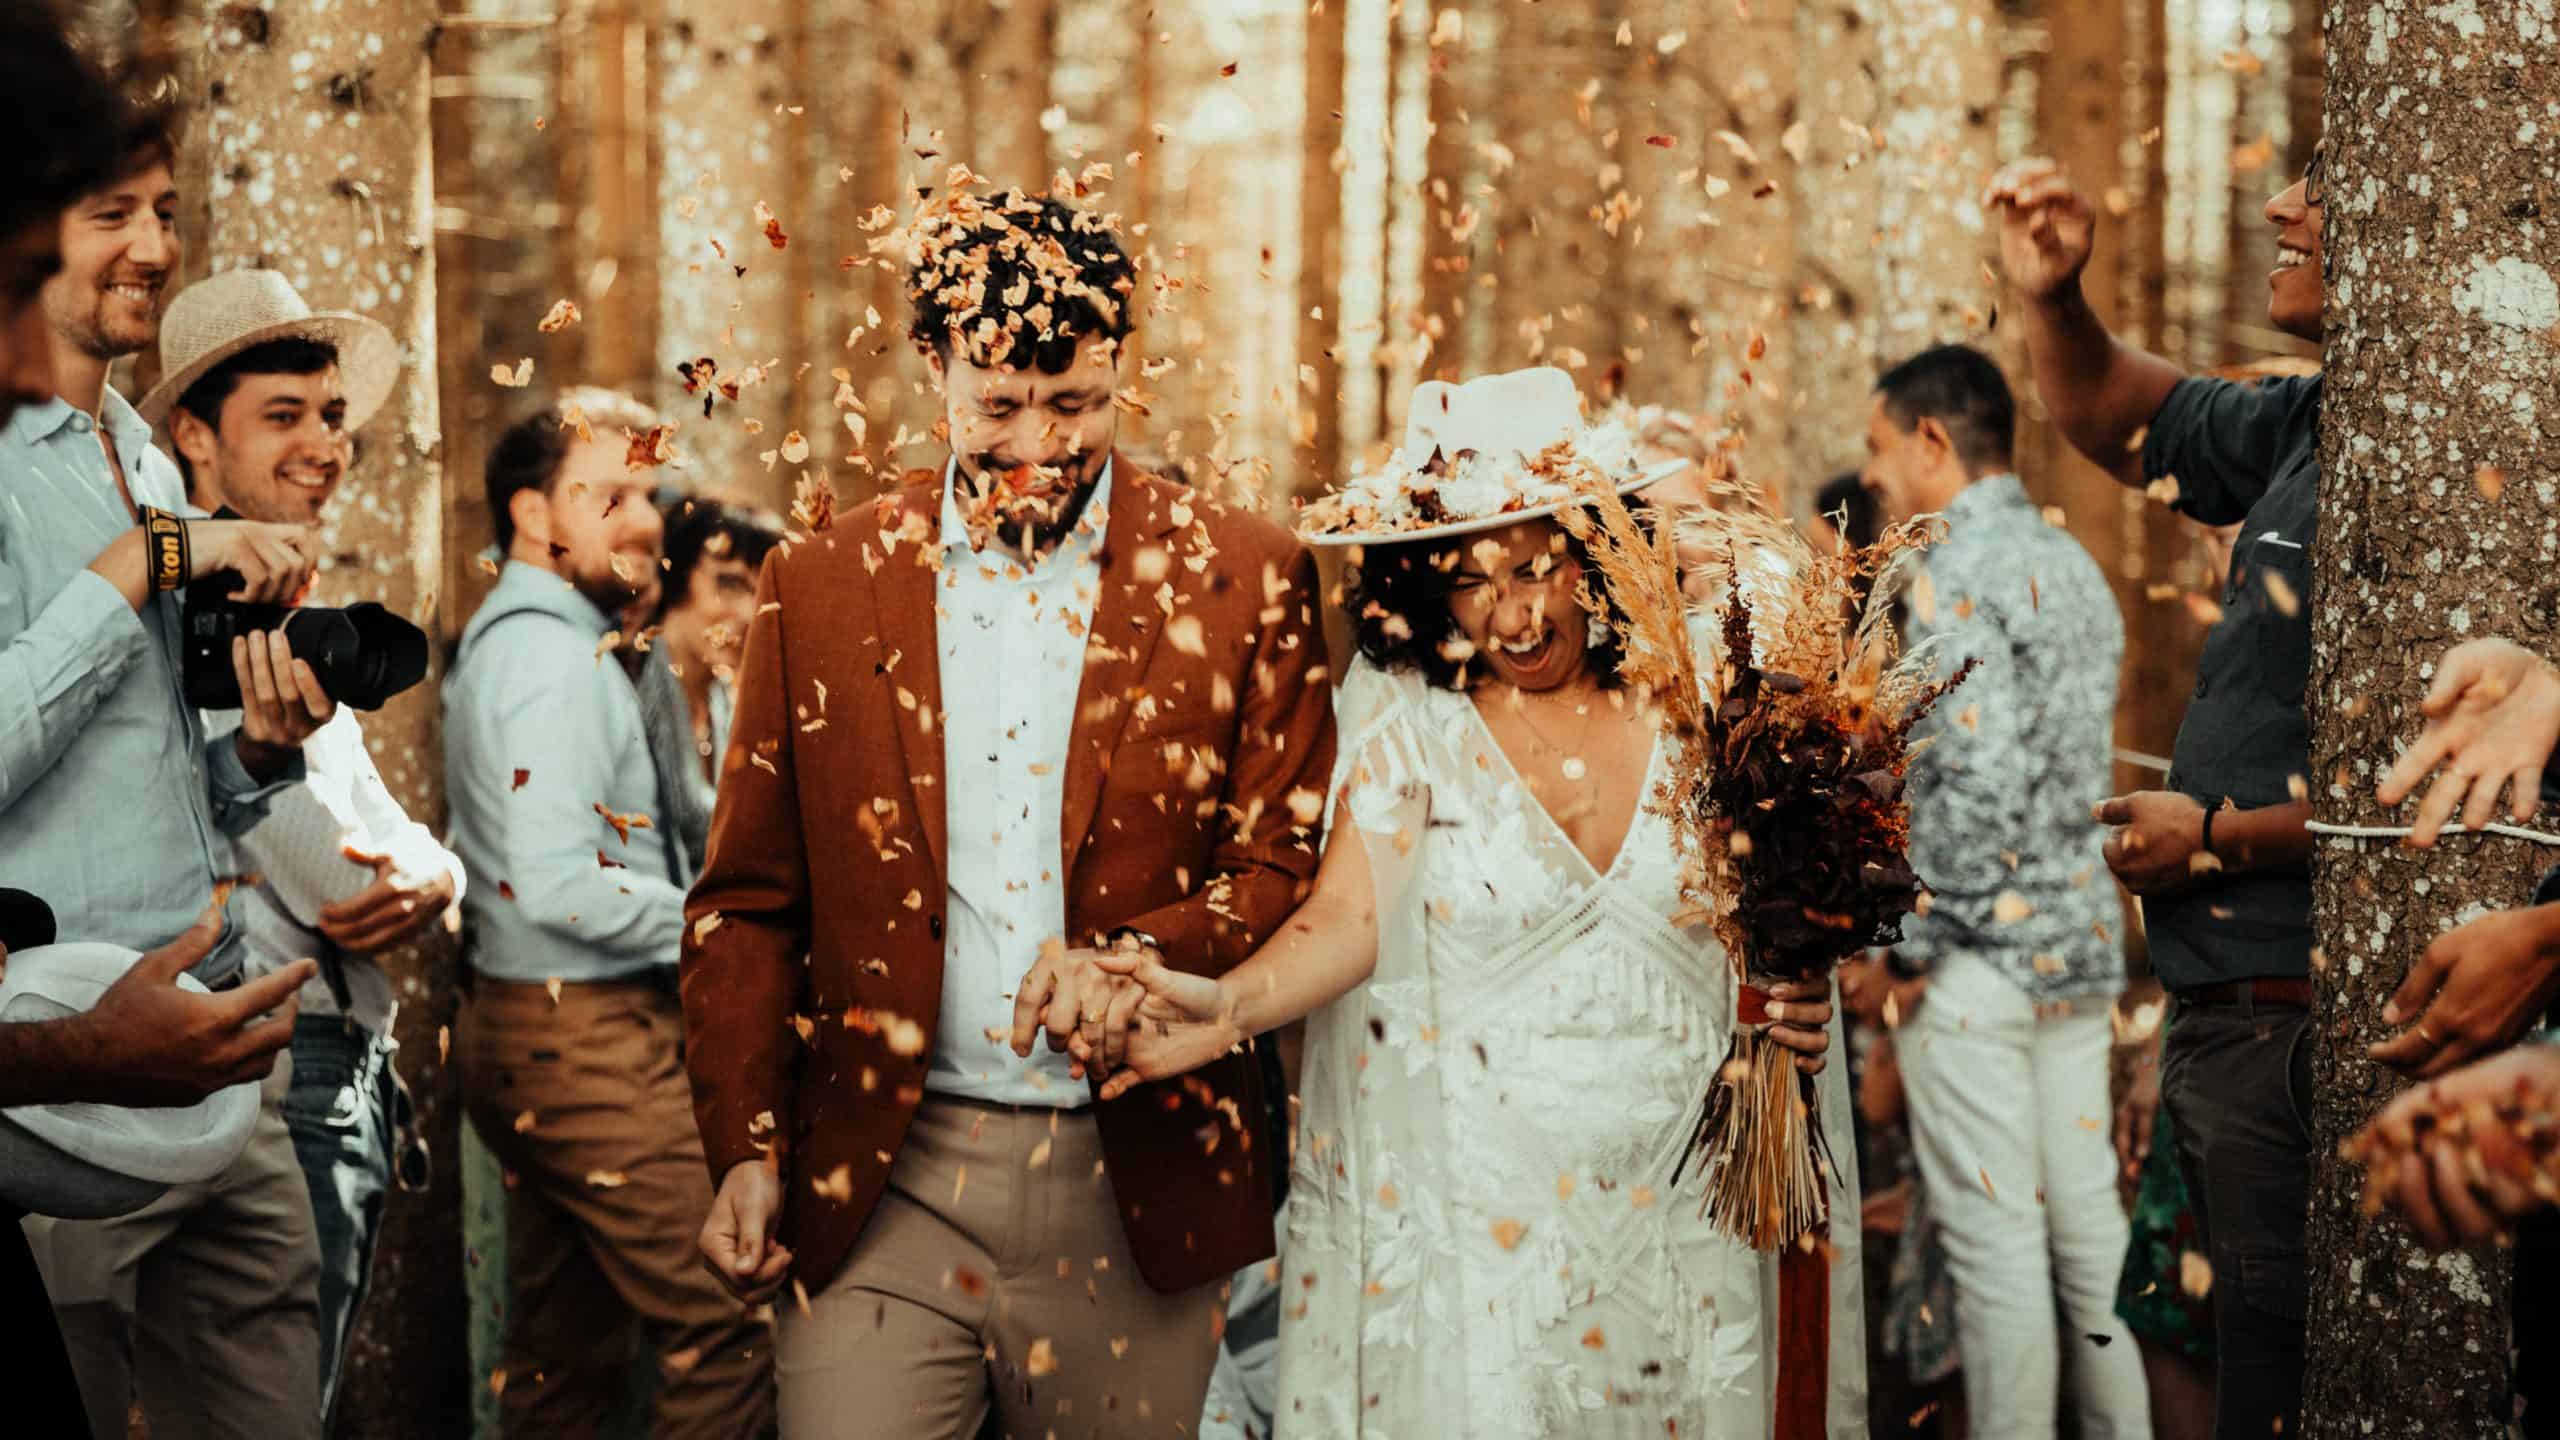 Esküvői játék | játék és üzenet, jókívánság egyben: a boldog házasság leltára esküvői